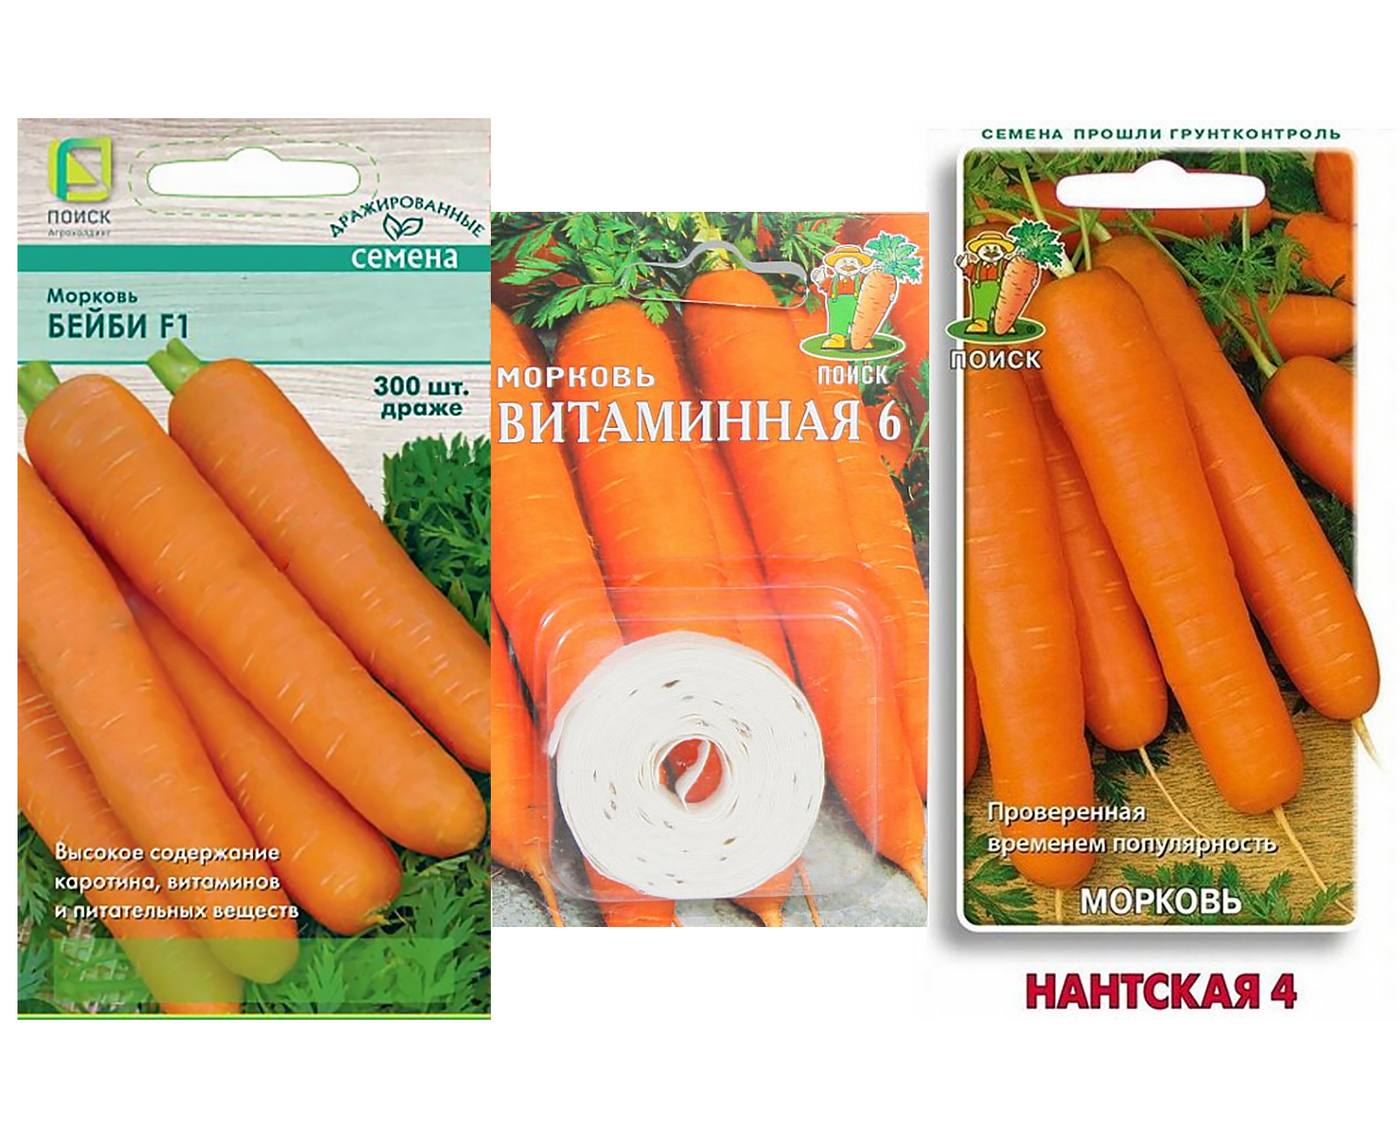 Выбор места и подготовка почвы для посадки моркови Нарбонне